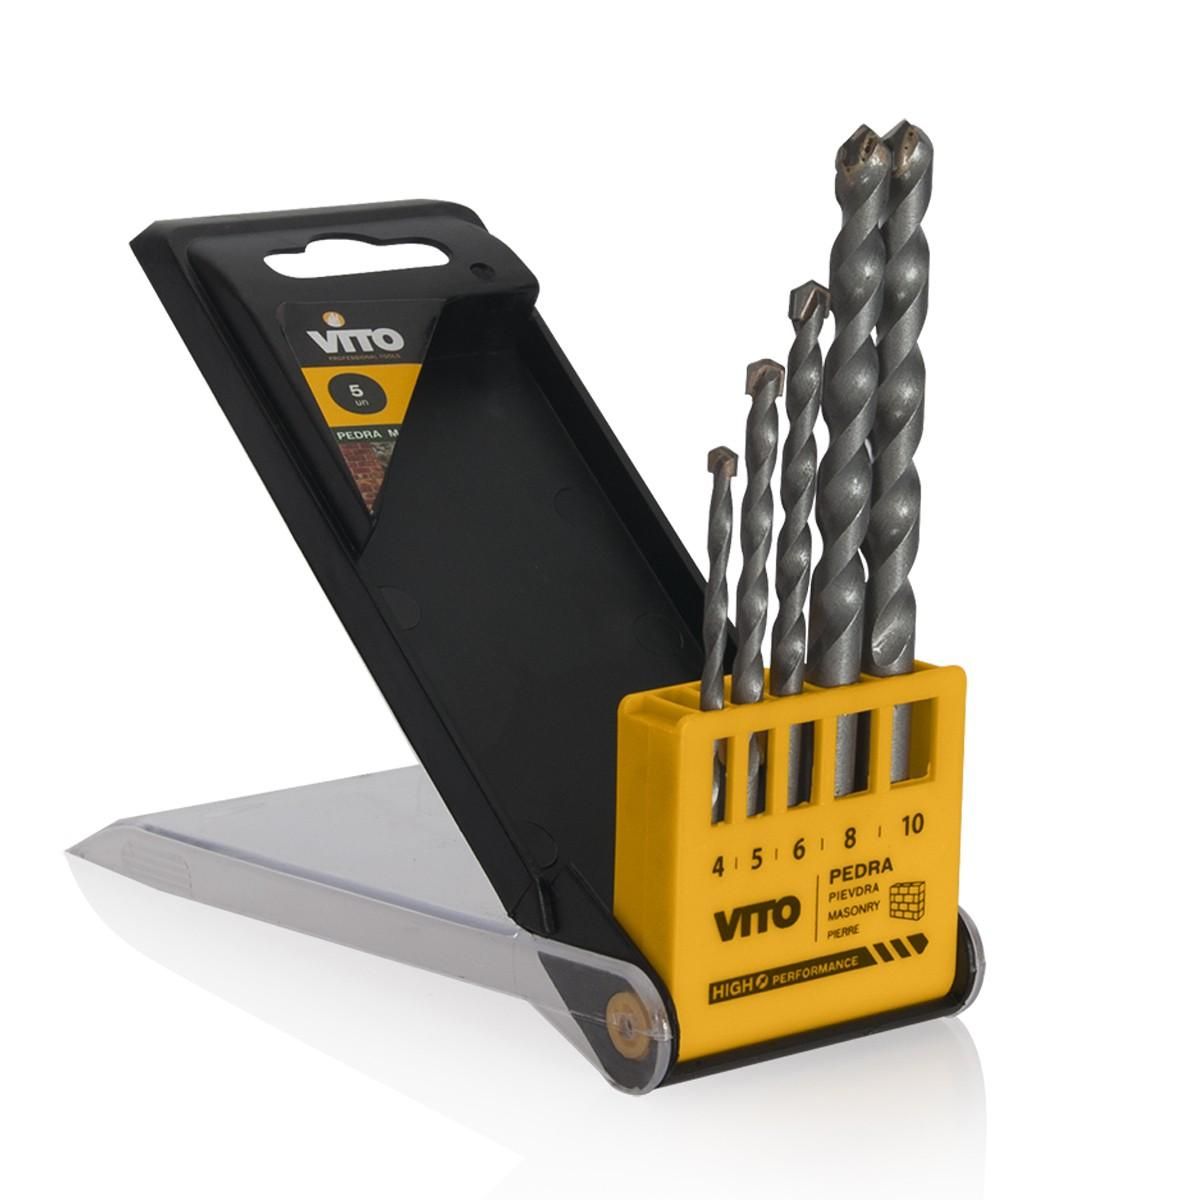 VITO Pro-Power Forets Pierre coffret de 5 pièces Diam 4,5,6,8 et 10 mm VITOPOWER,